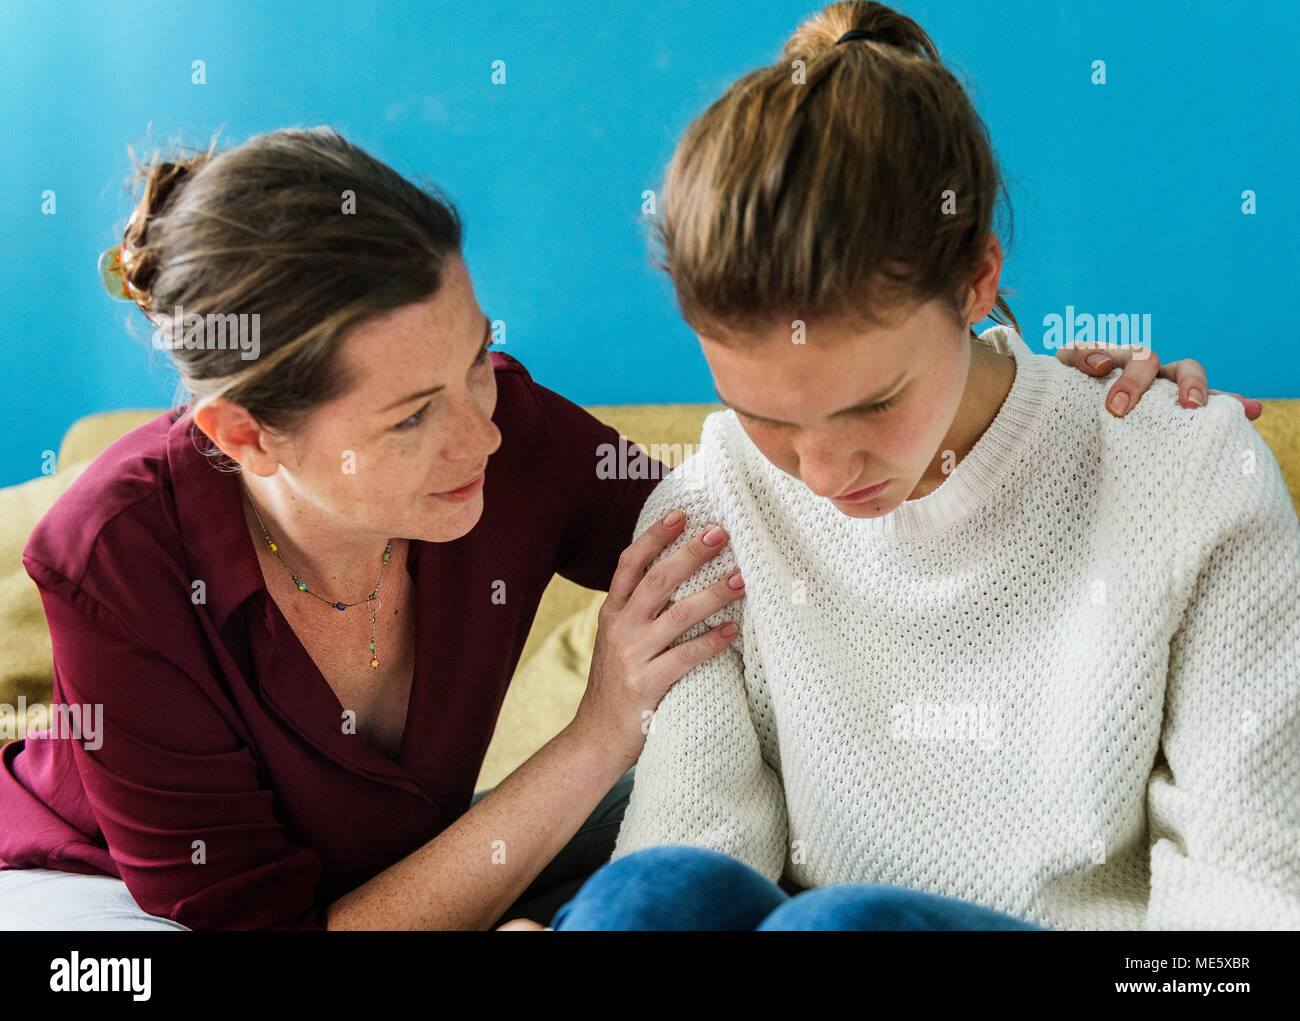 Mutter und Tochter im Teenageralter in einem arguument Stockfoto